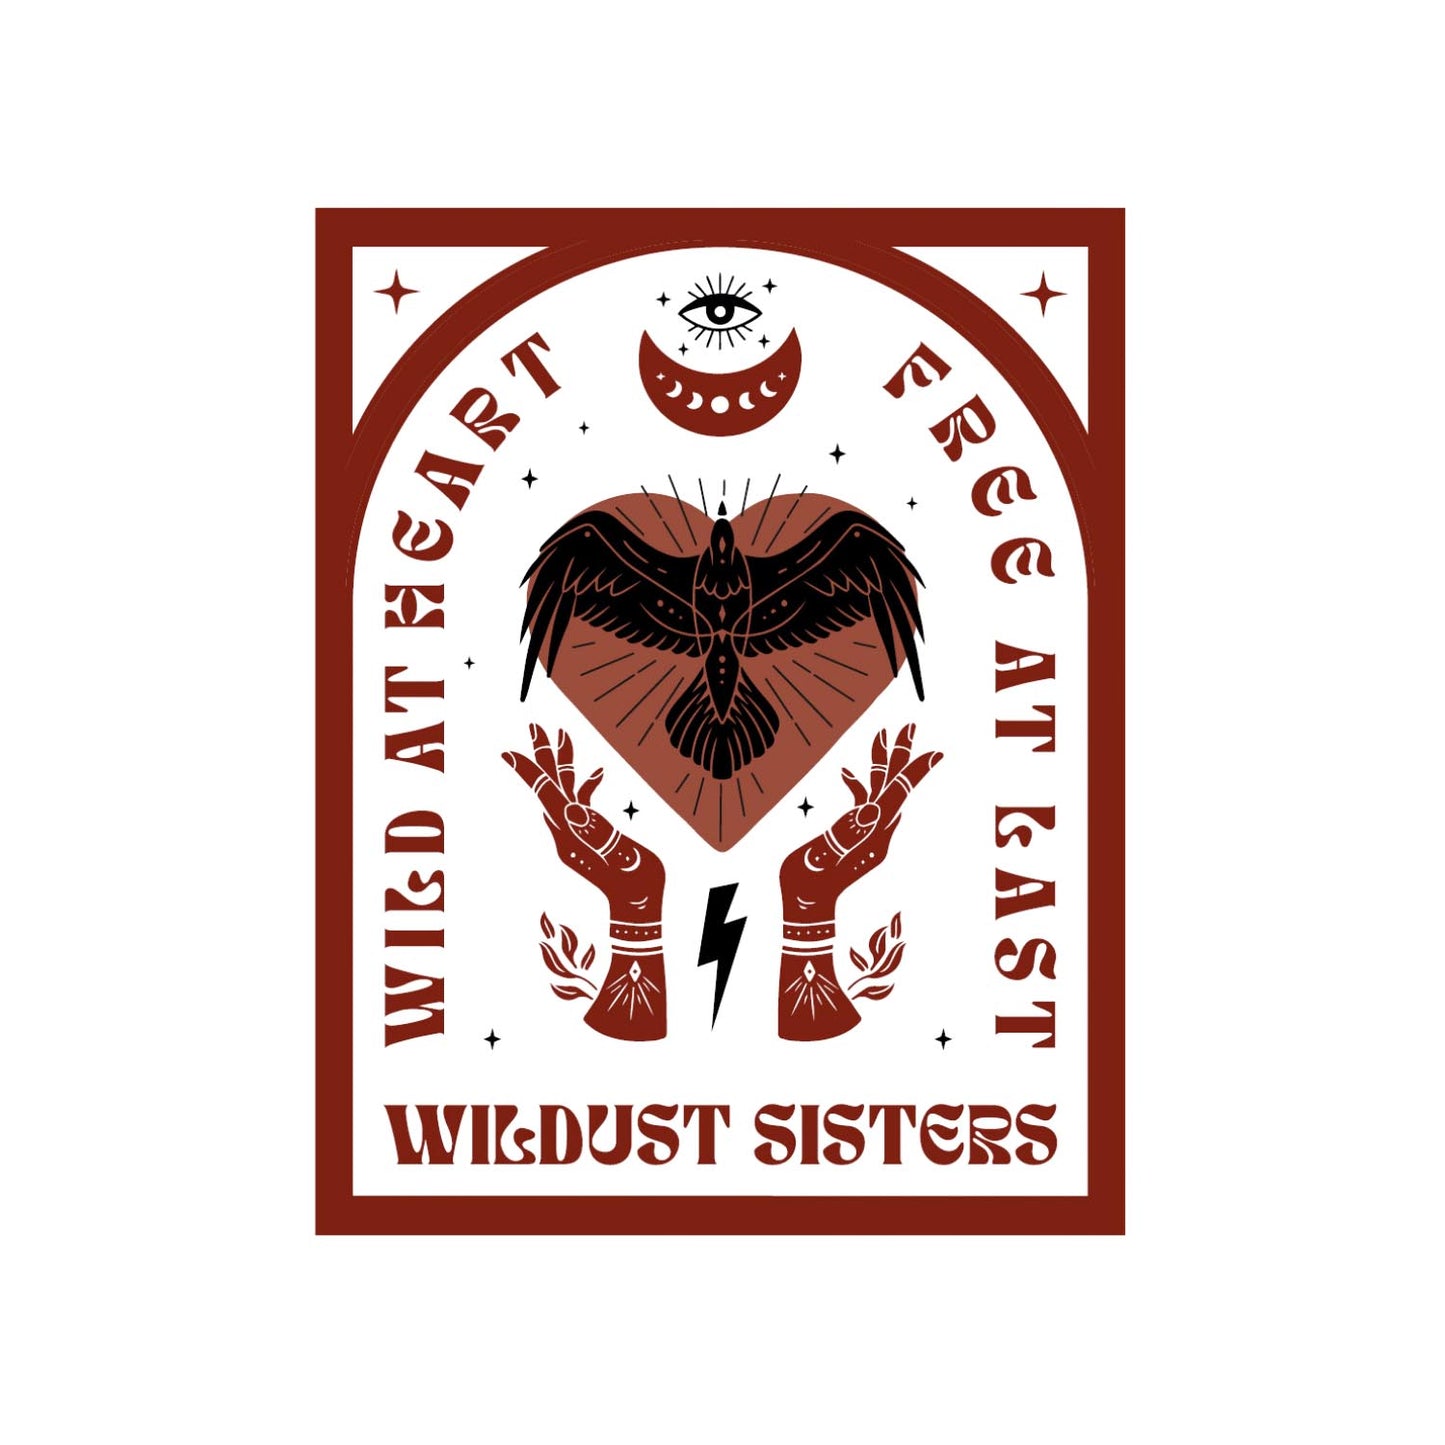 Wildust Sisters Wild Heart T-Shirt - White